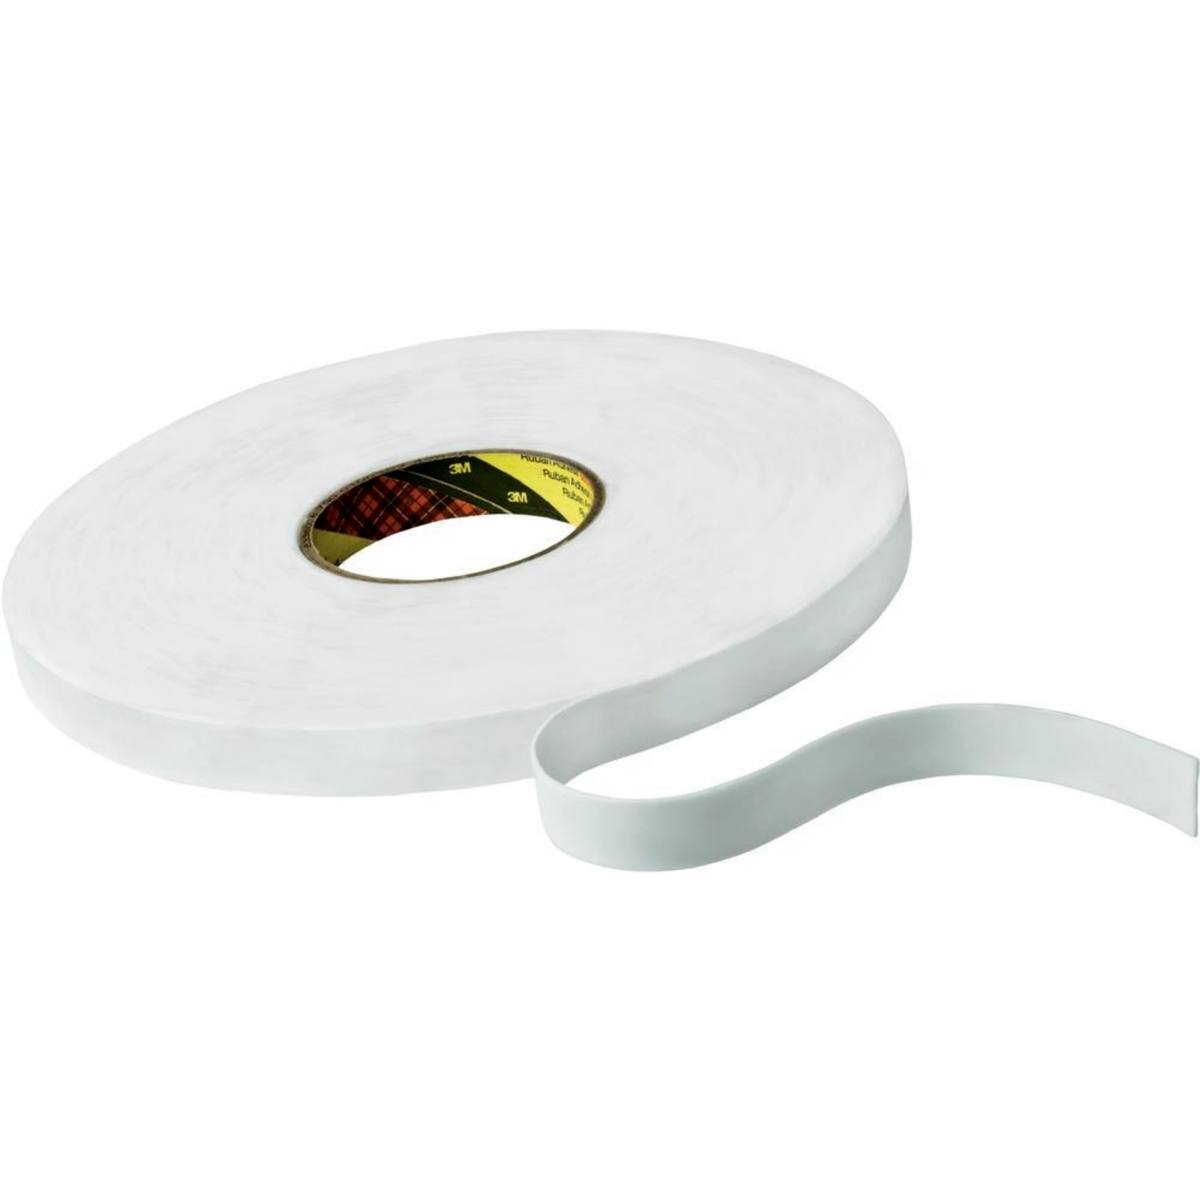 3M Dubbelzijdige PE-schuimtape met acrylaatlijm 9508W, wit, 1500 mm x 66 m, 0,8 mm